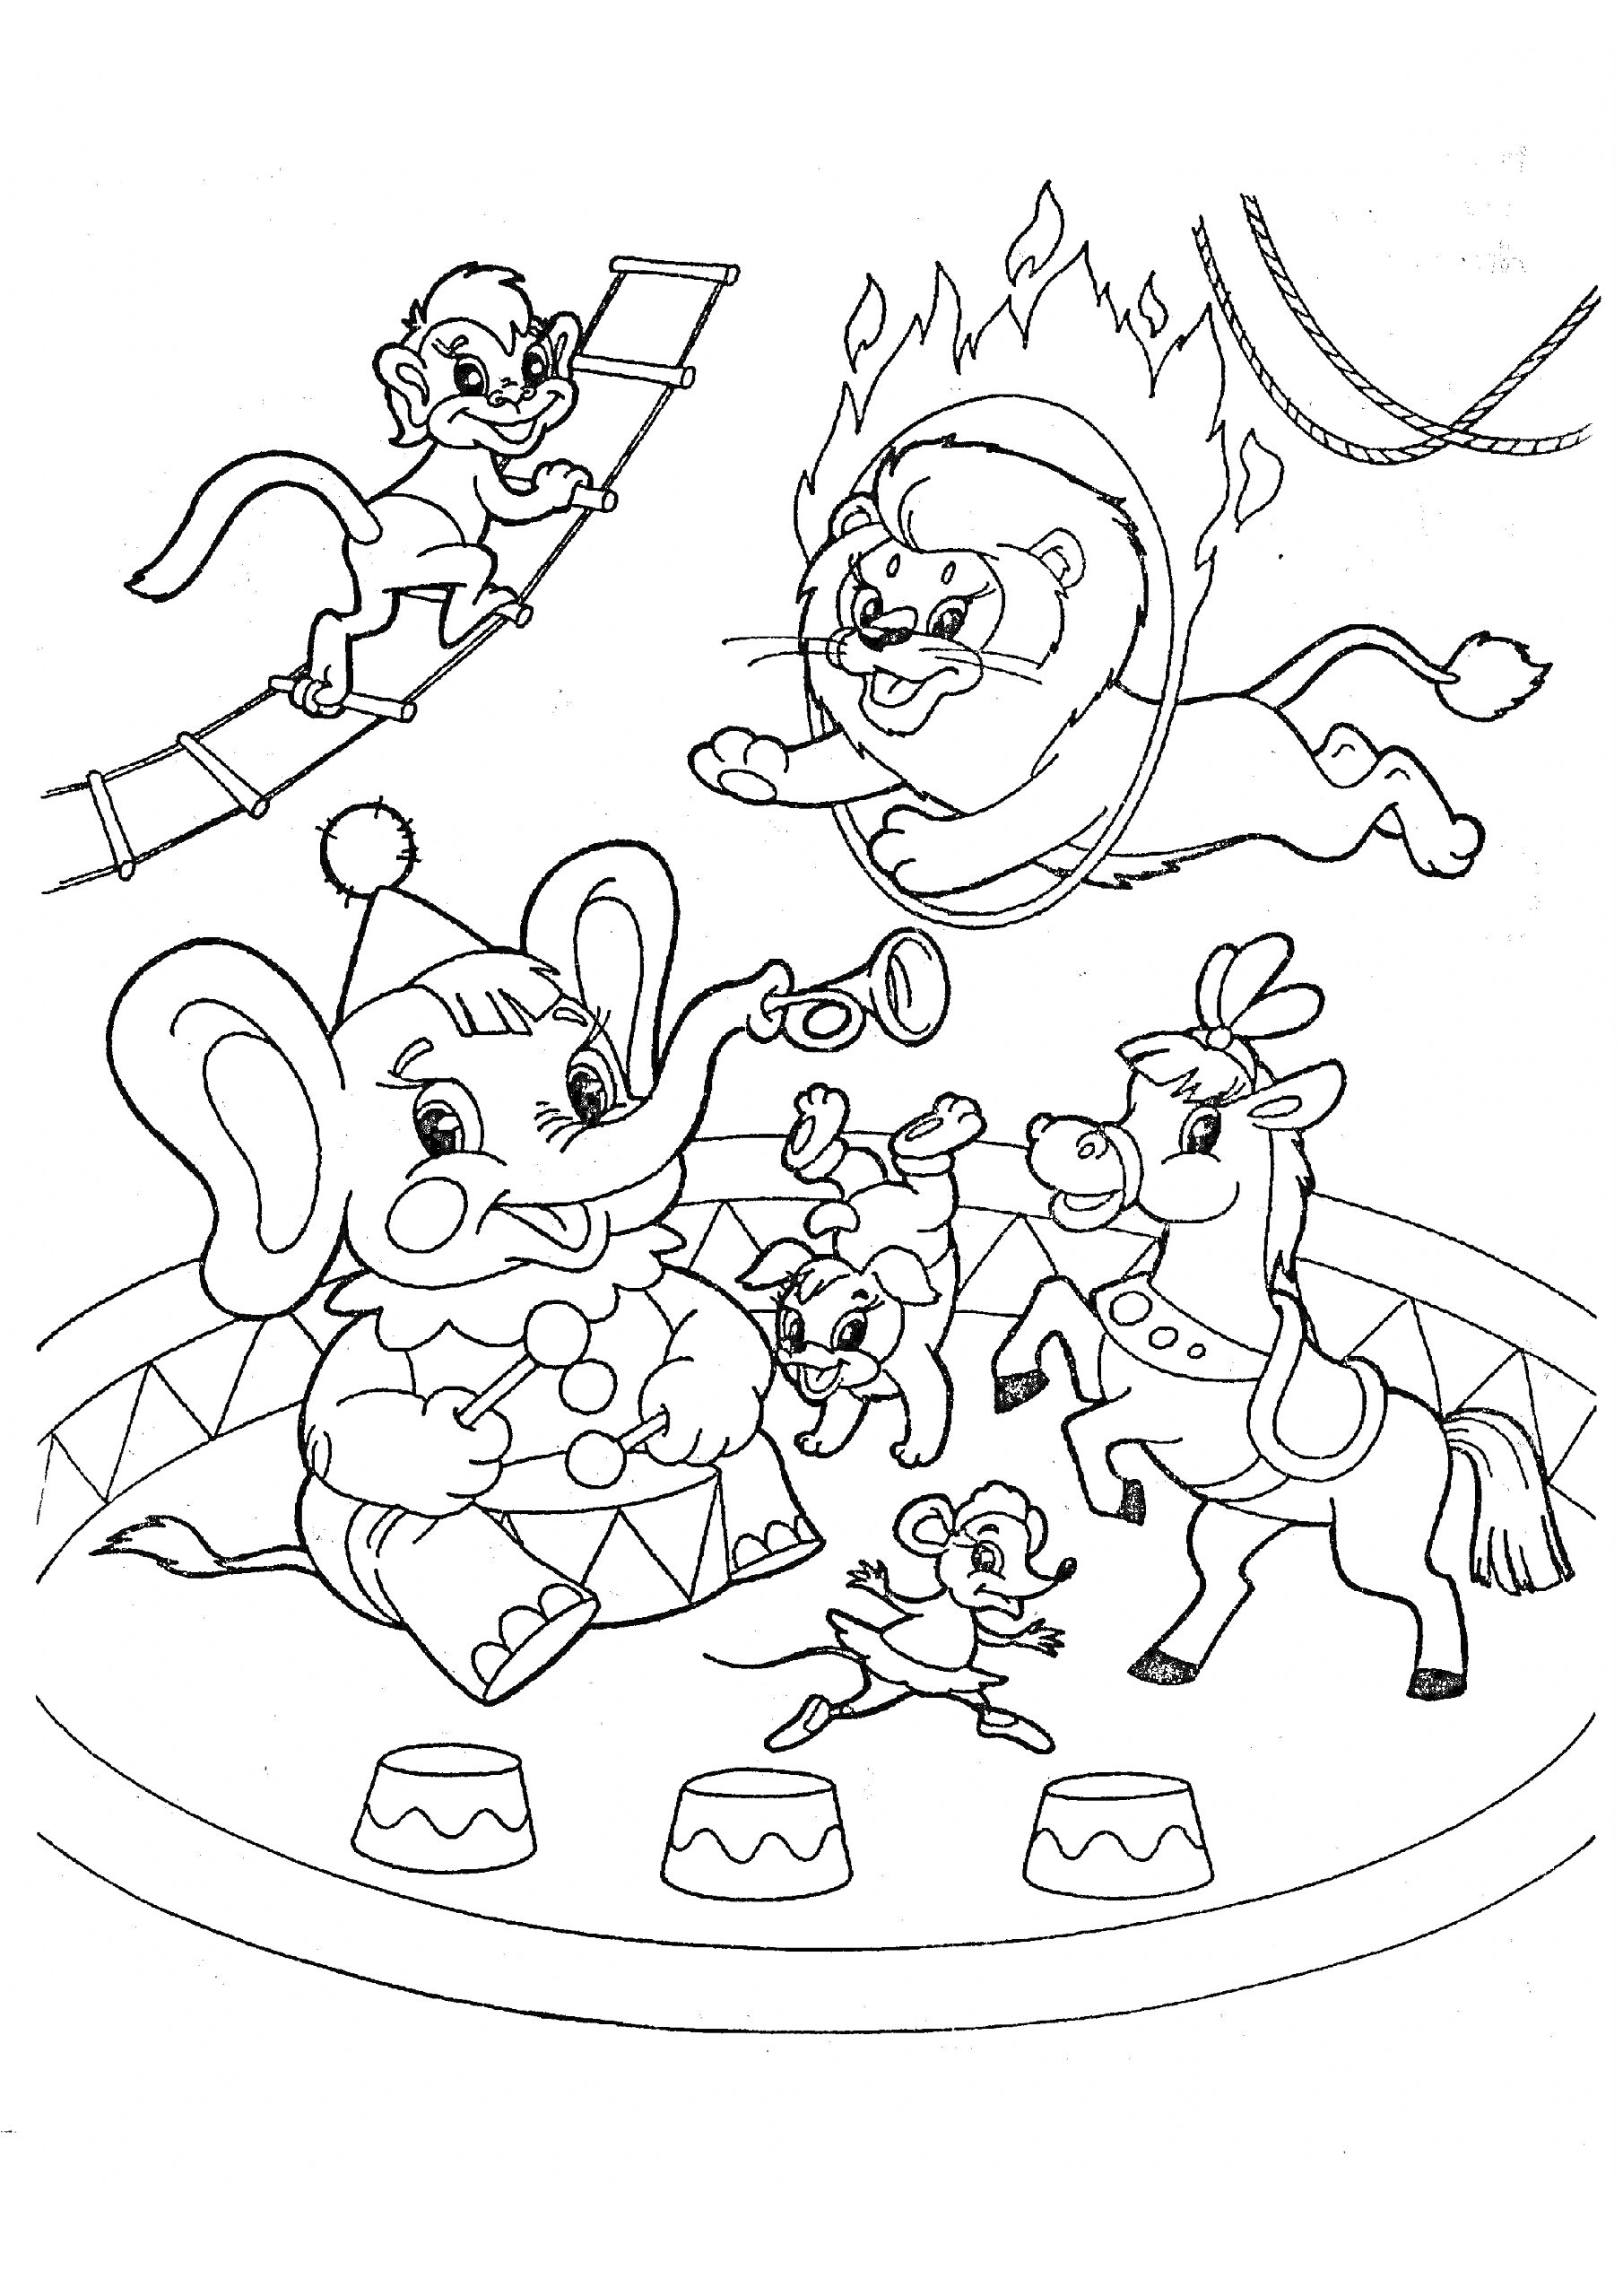 Цирк с животными на аренде: слон-клоун с трубой, лев прыгающий через огненное кольцо, обезьяна на канате, цирковая лошадь, танцующие мыши